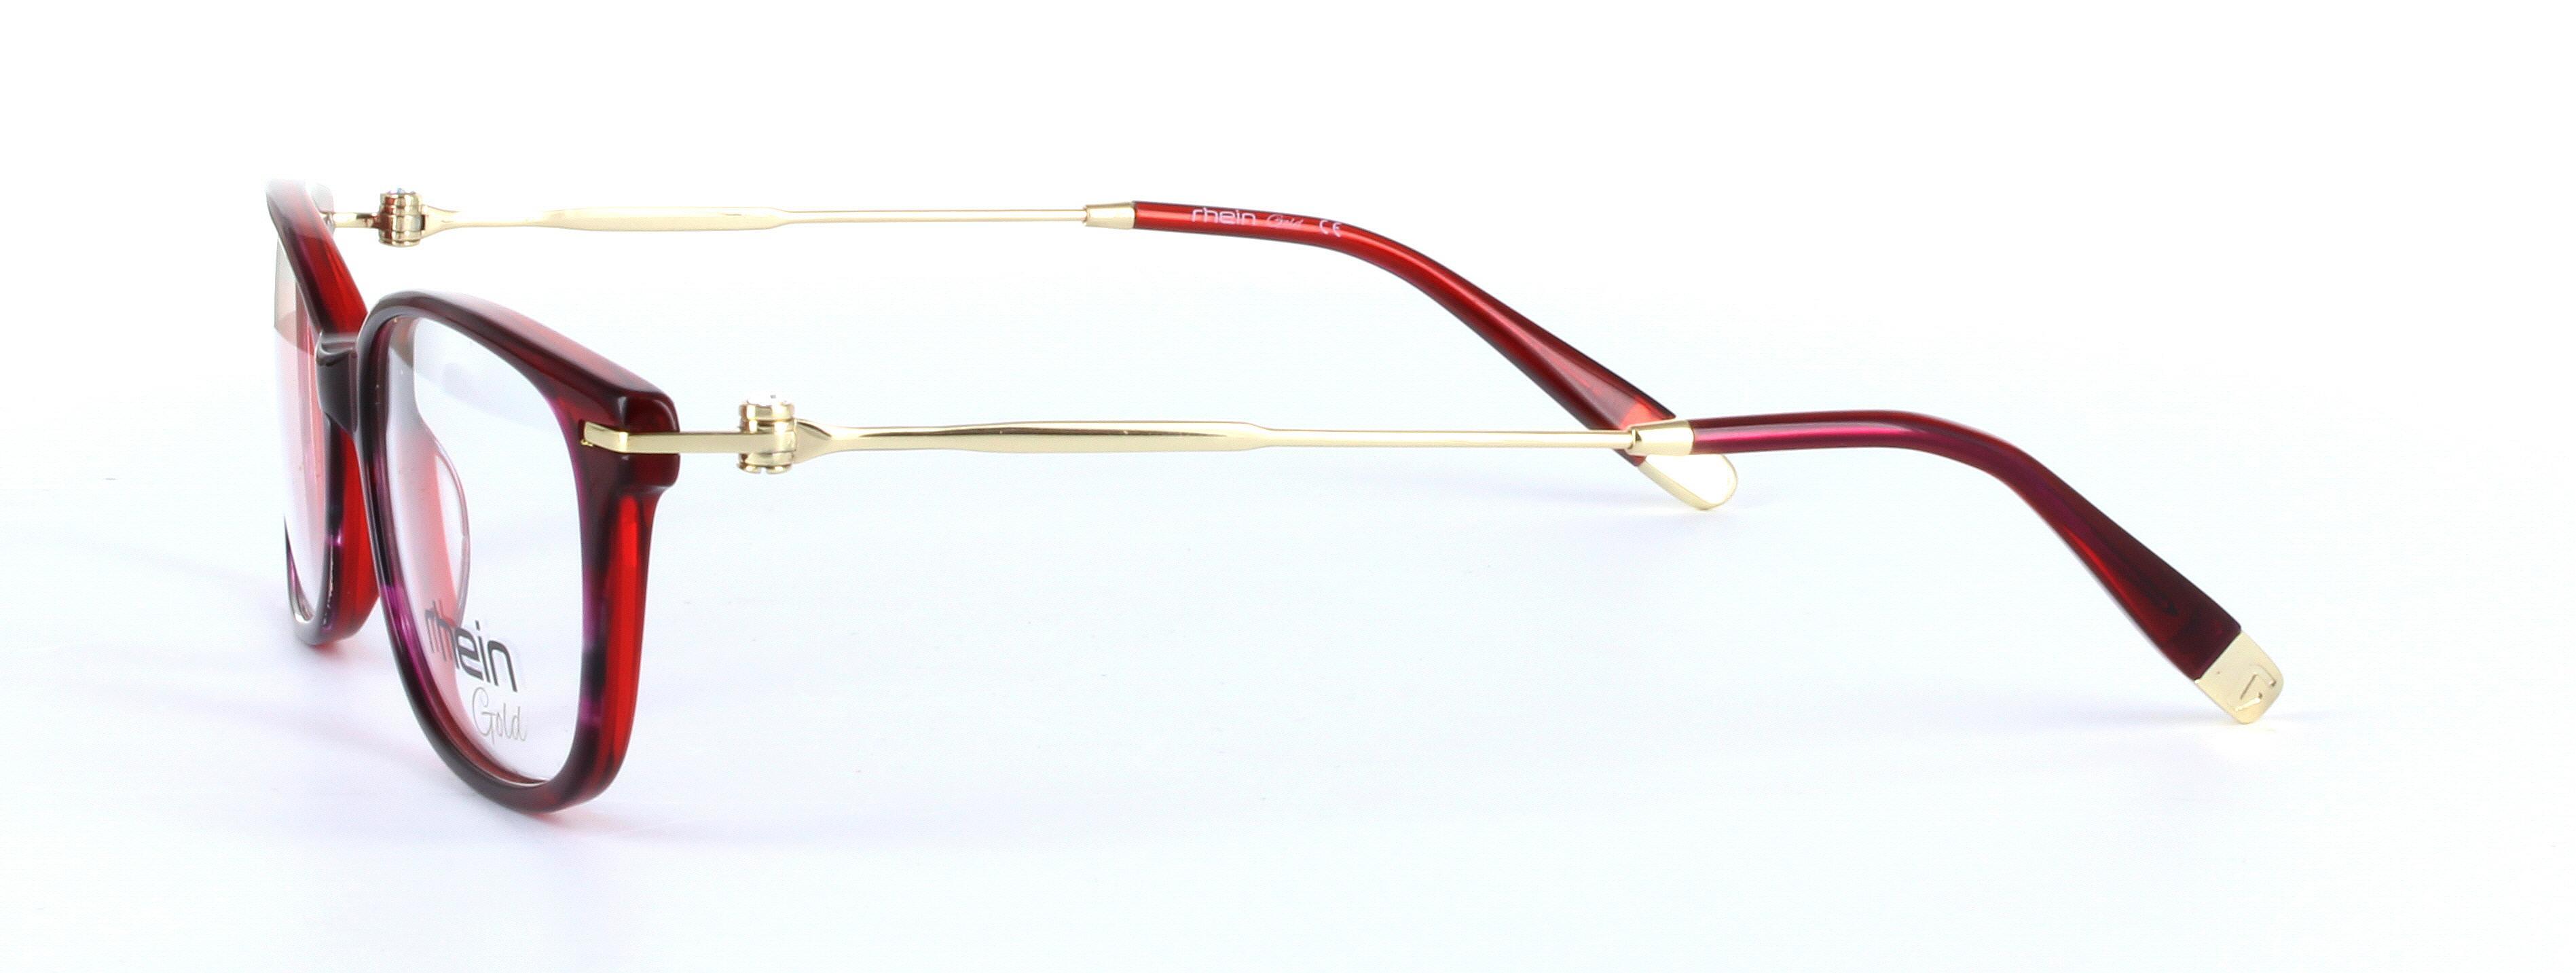 Locarno Red Full Rim Oval Plastic Glasses - Image View 2